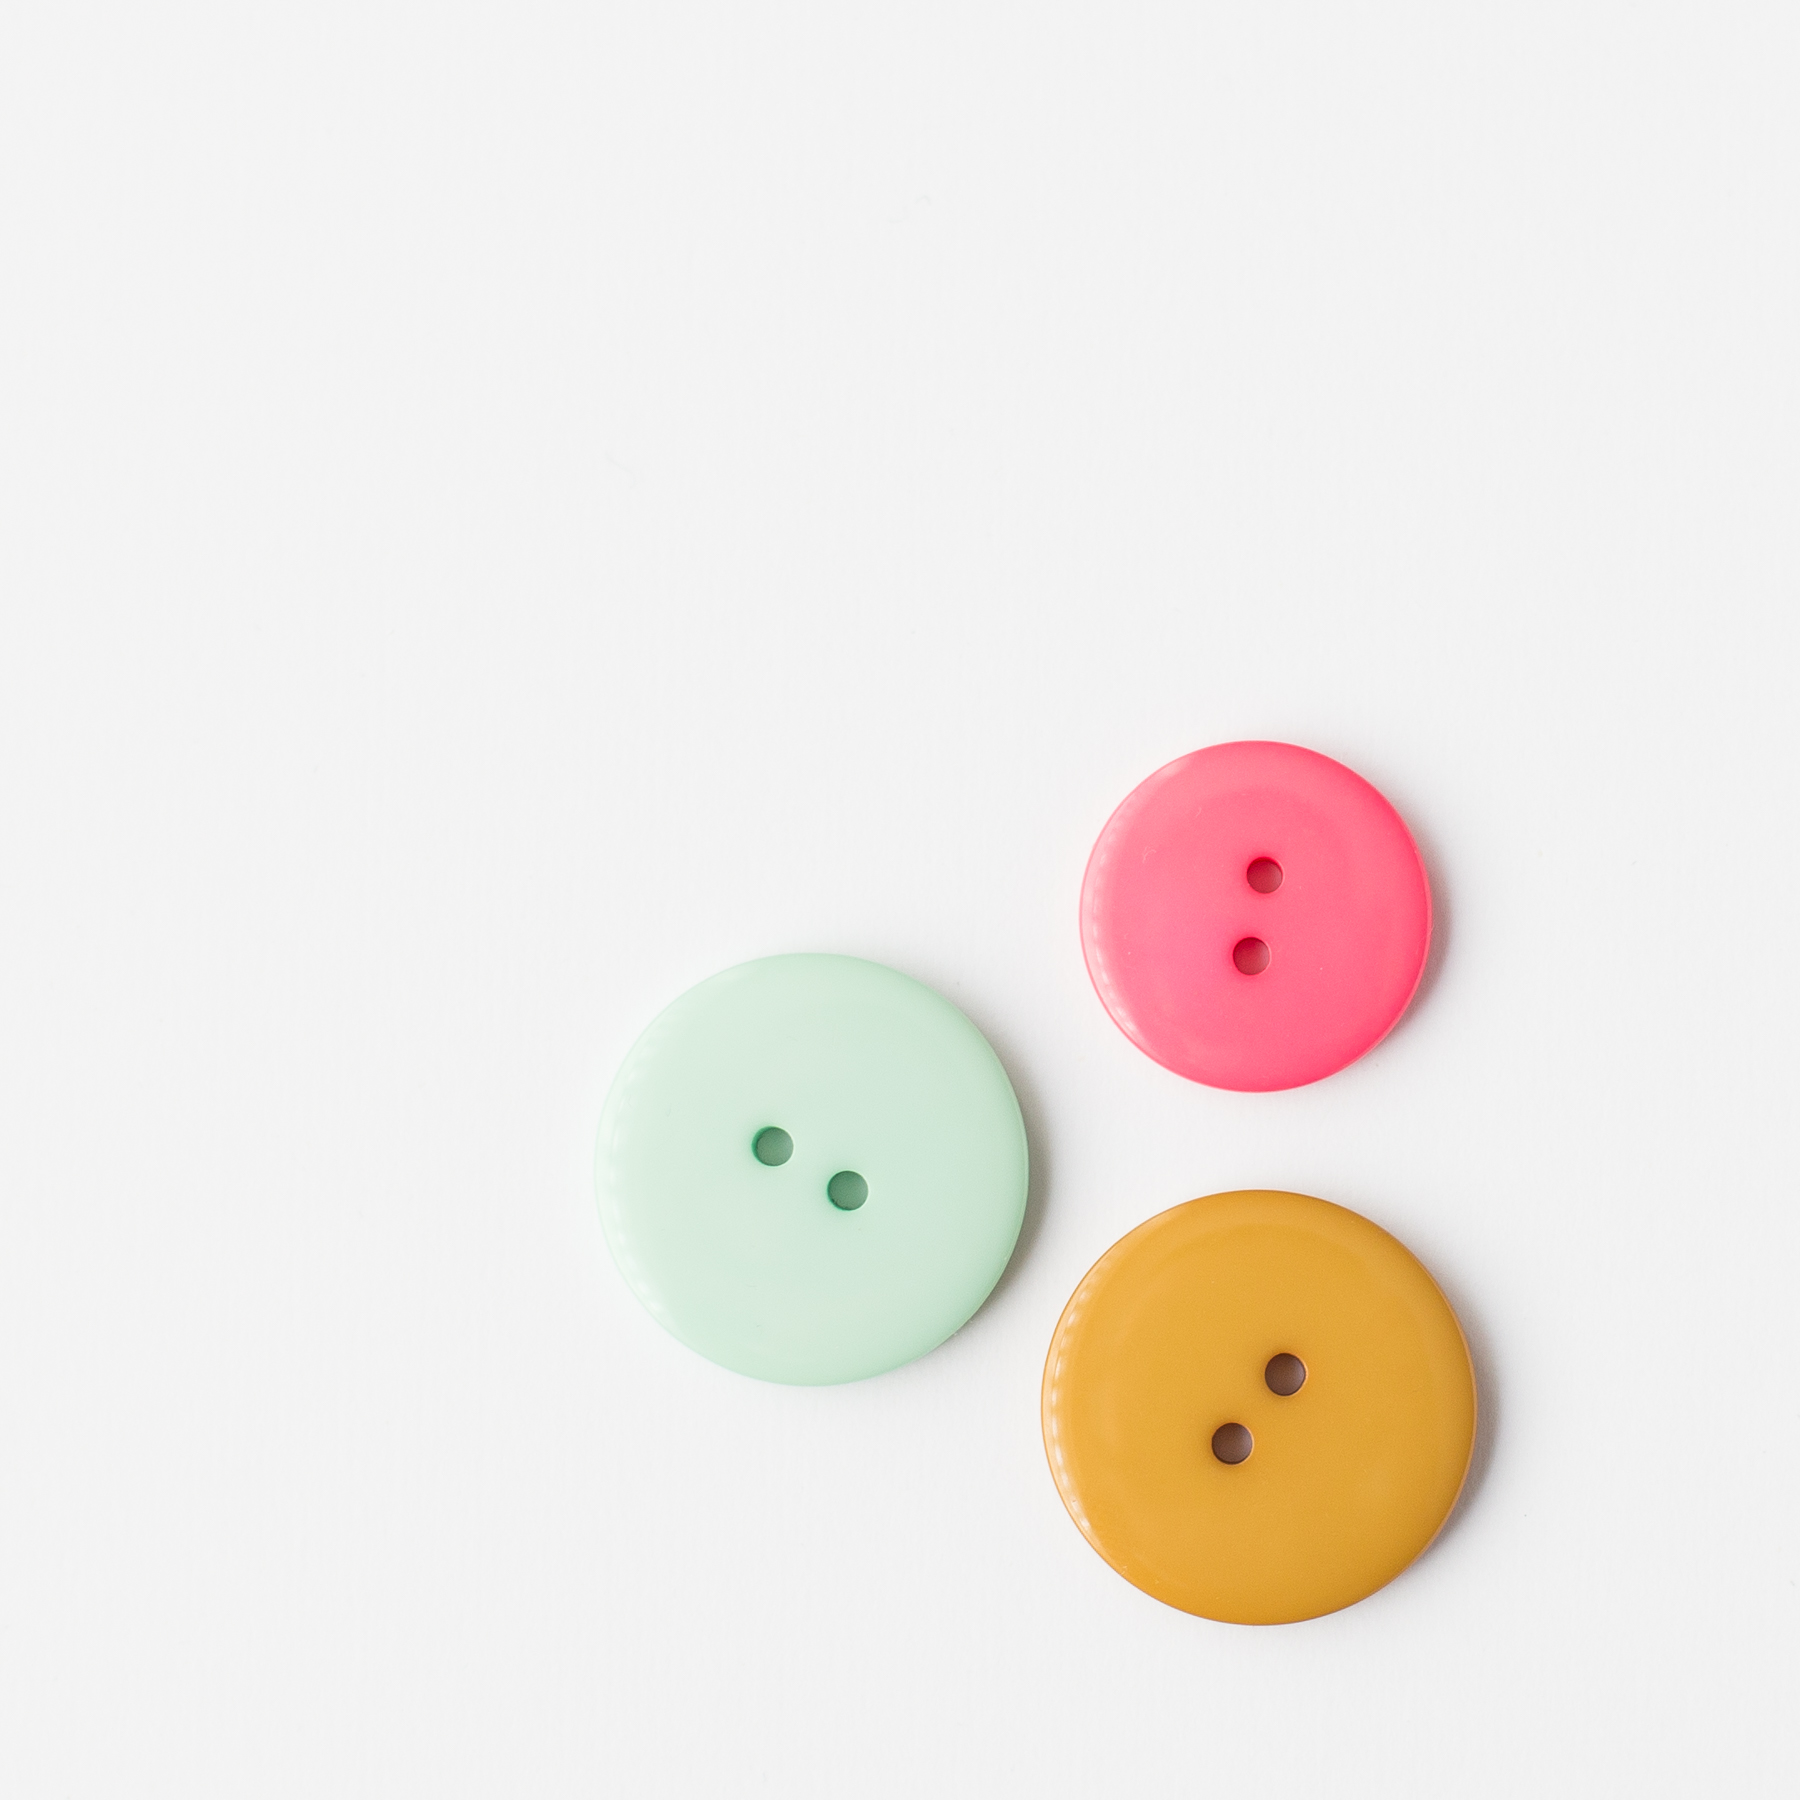 knapper plastikk strikk - Ochre yellow plastic button | Large | 28 mm | Round plastic button - 28/03/2018